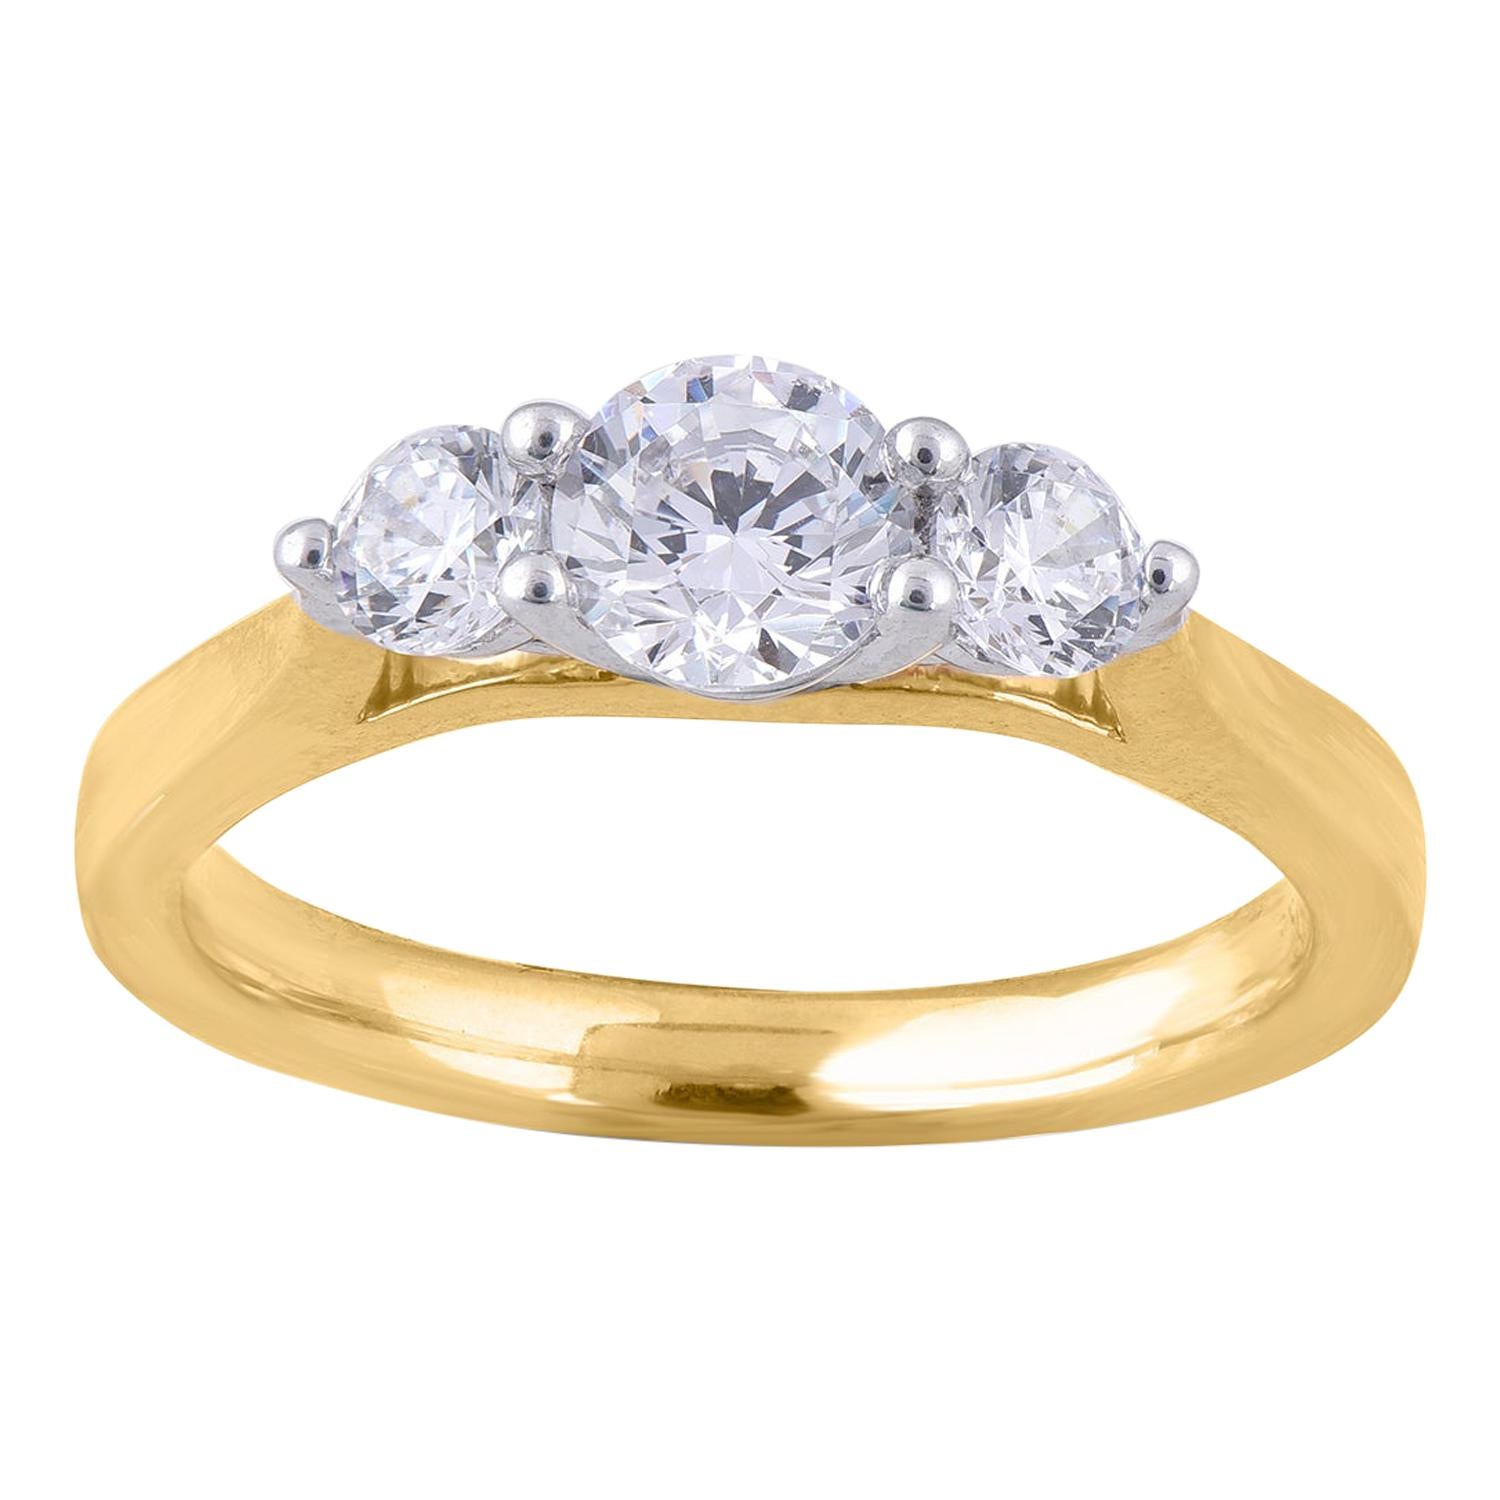 TJD 1.00 Carat 3 Stone Round Diamond 18 Karat Yellow Gold Engagement Ring